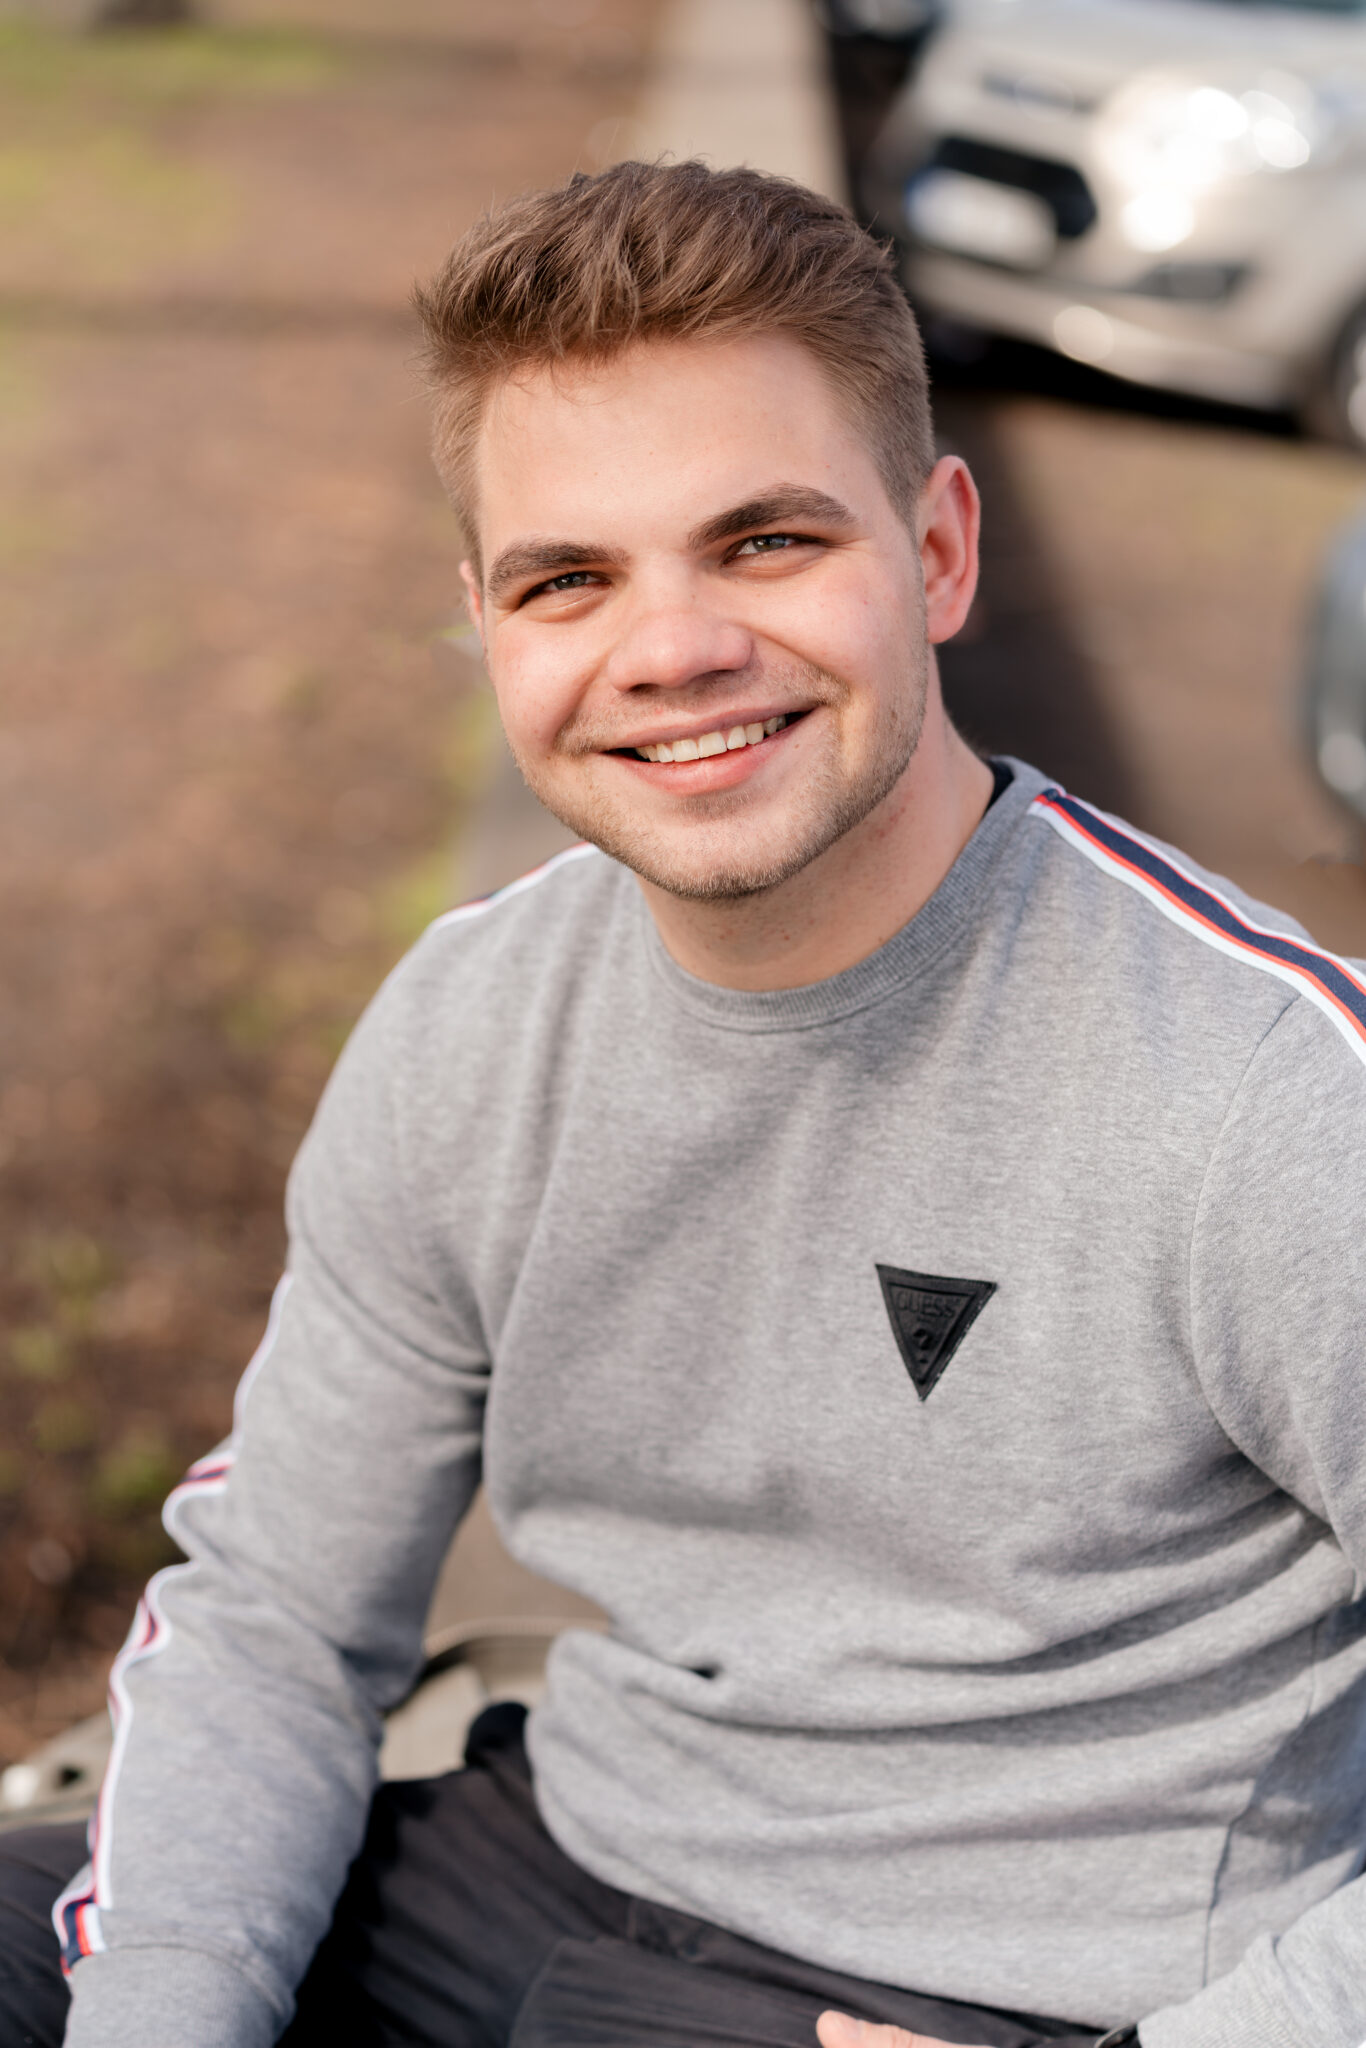 Junger Mann bei Tinder Fotoshooting sitzt auf einer mauer und lächelt